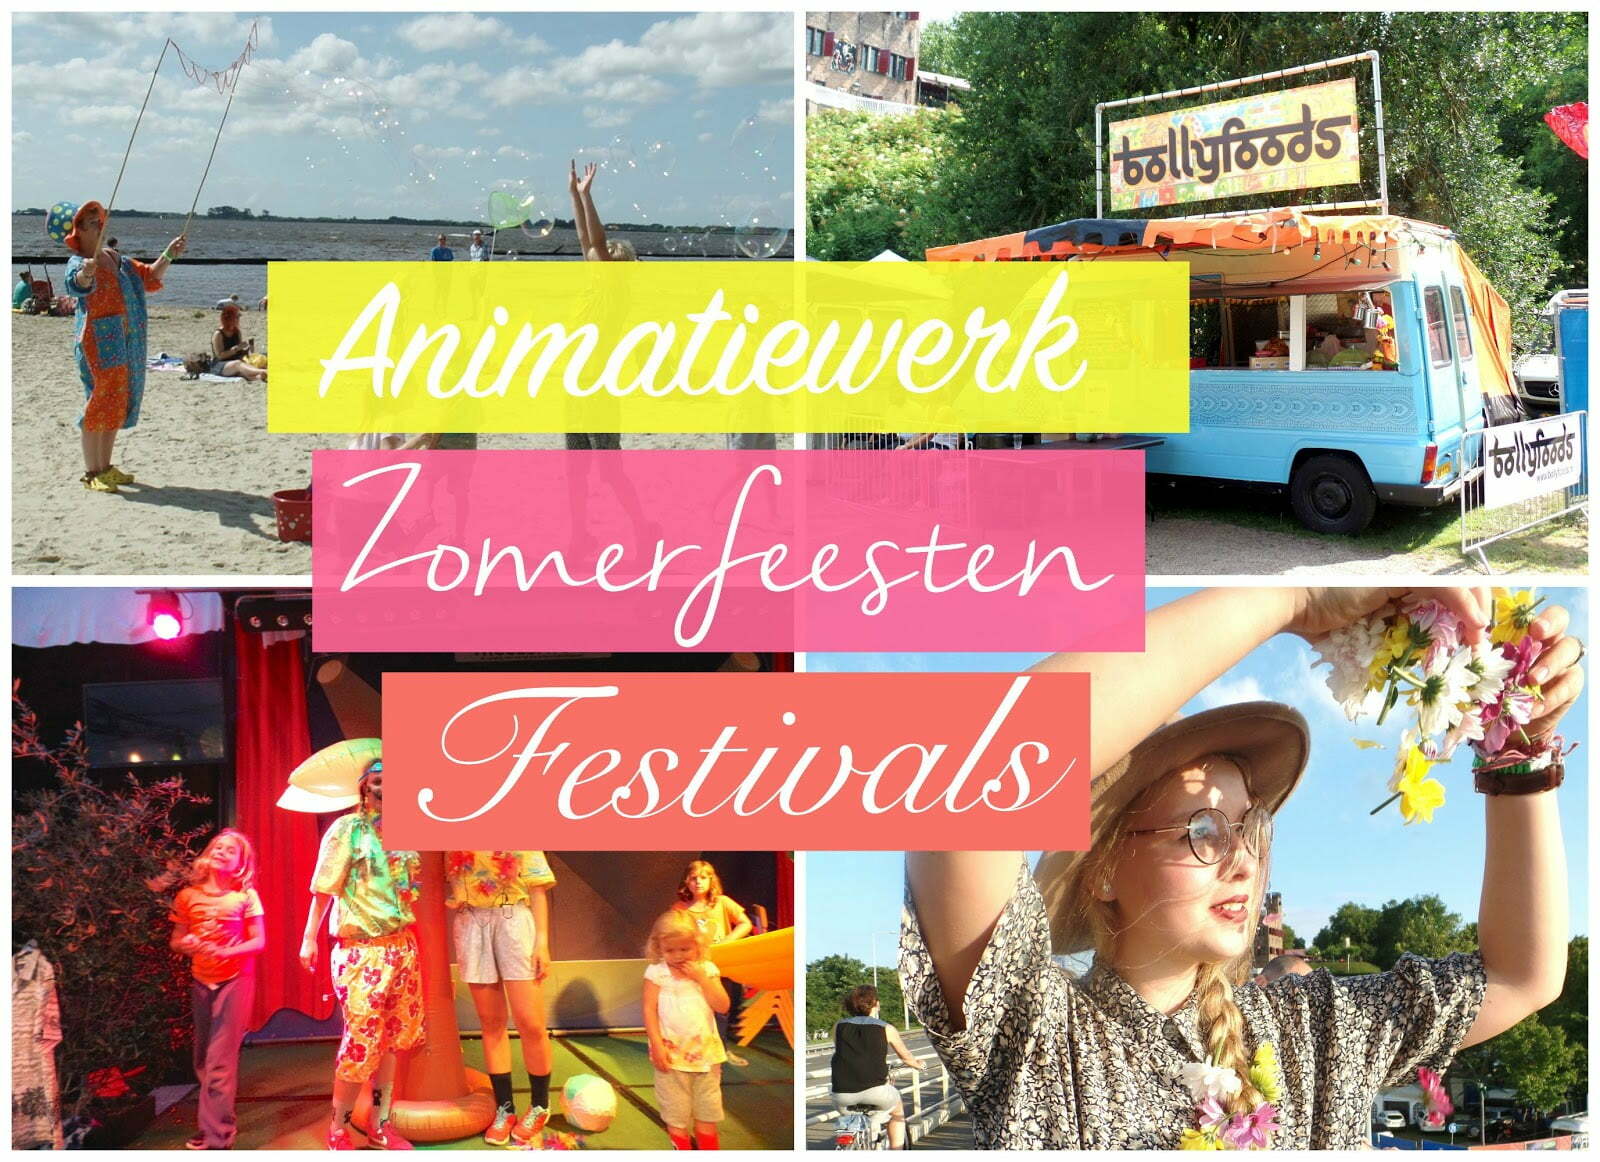 Animatie werk, zomerfeesten & festival Art Carnivale!